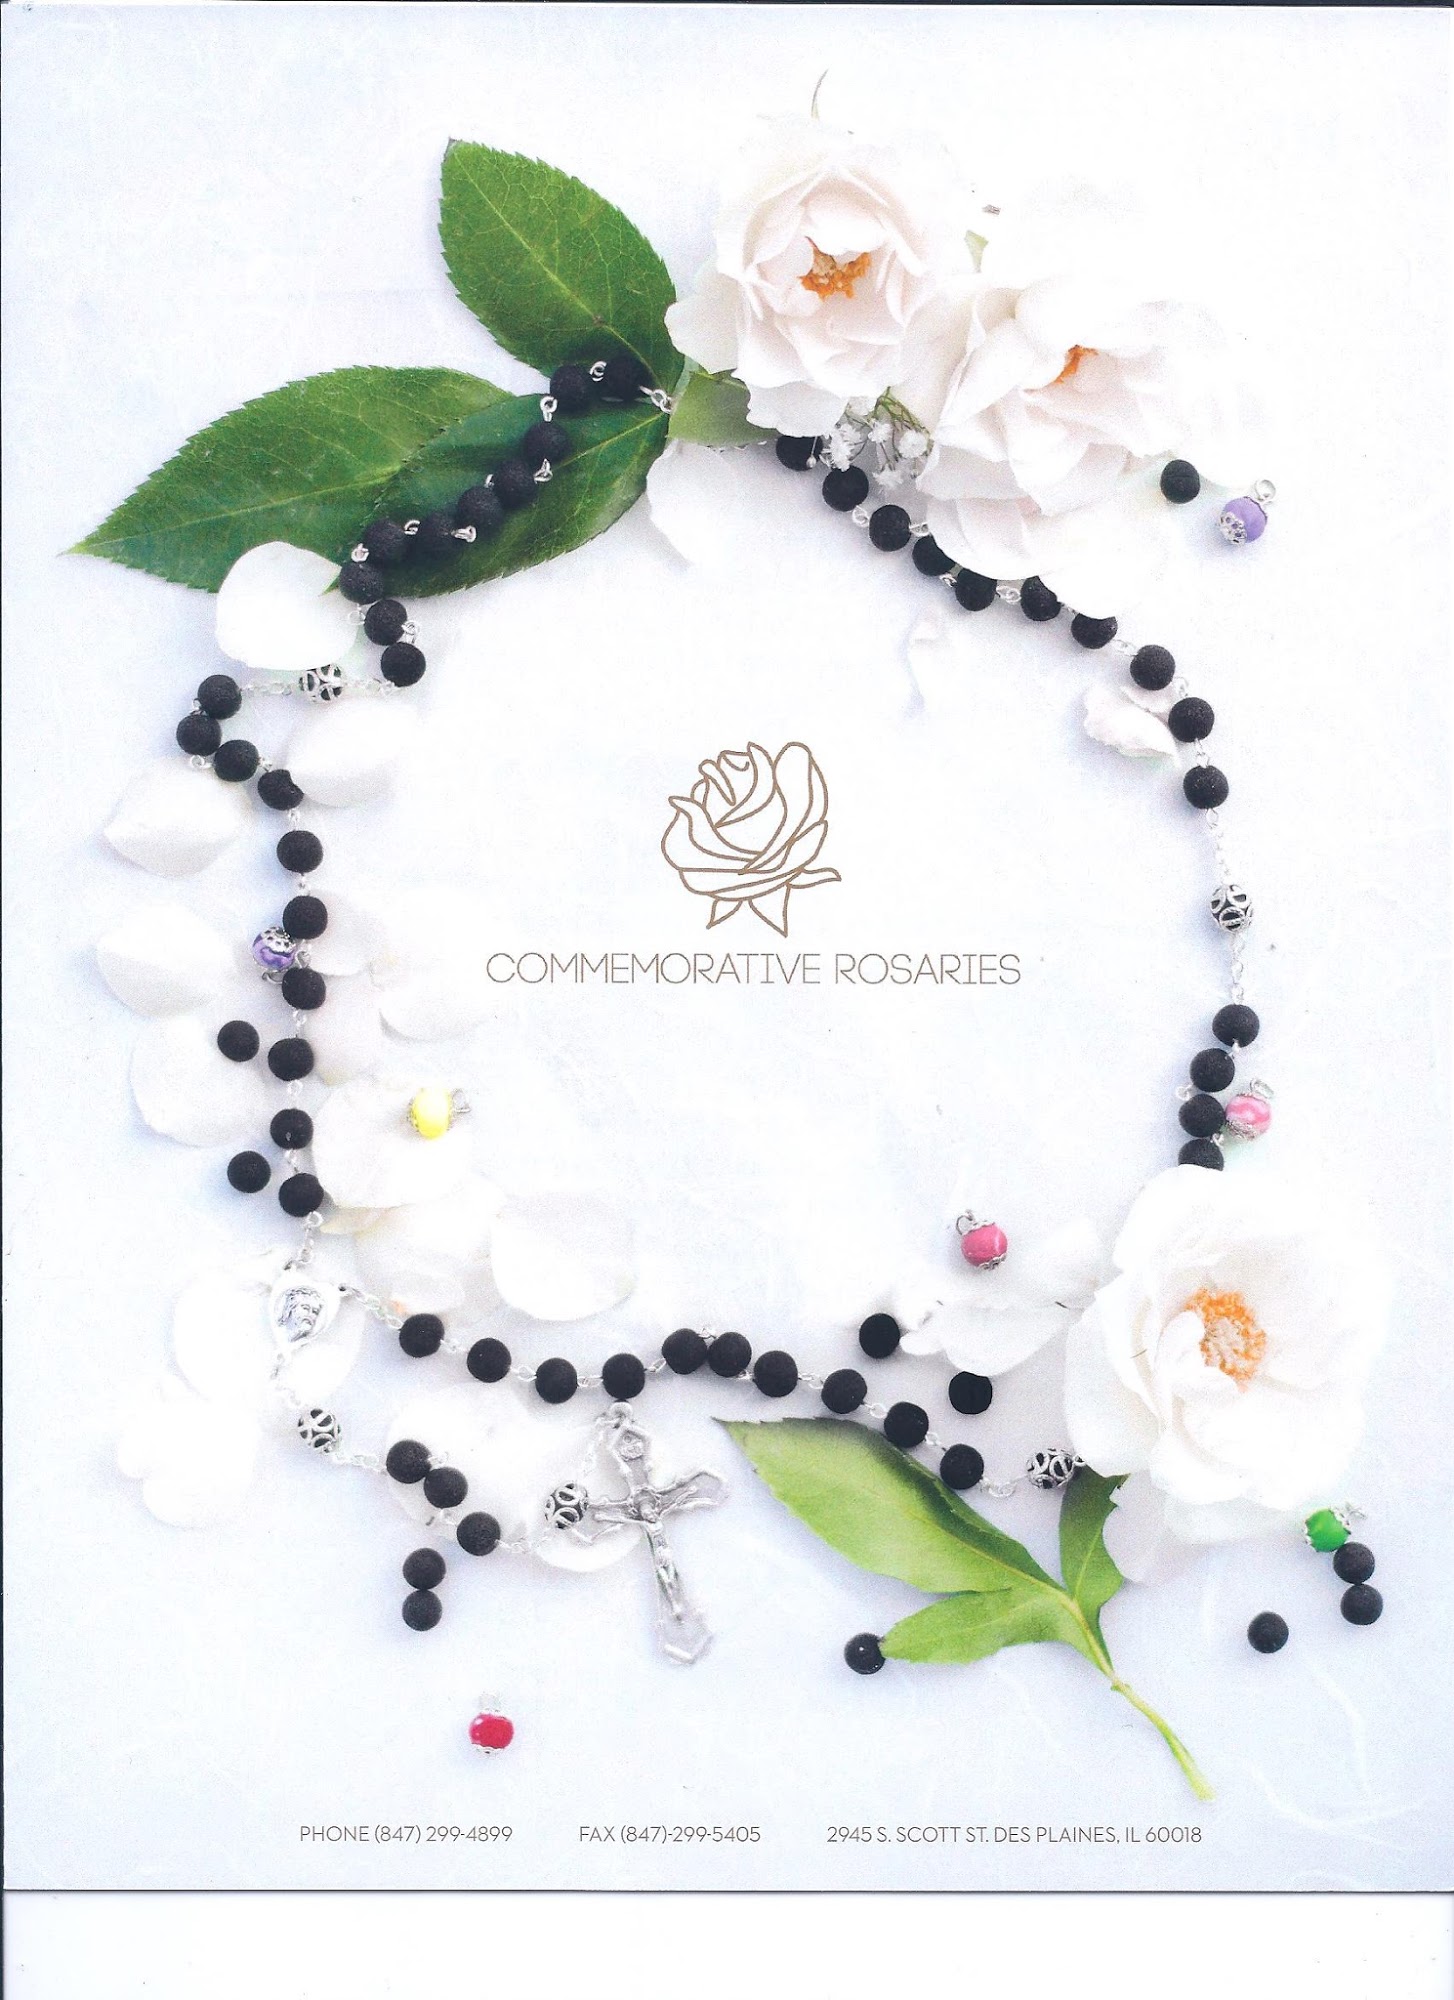 Commemorative Rosaries